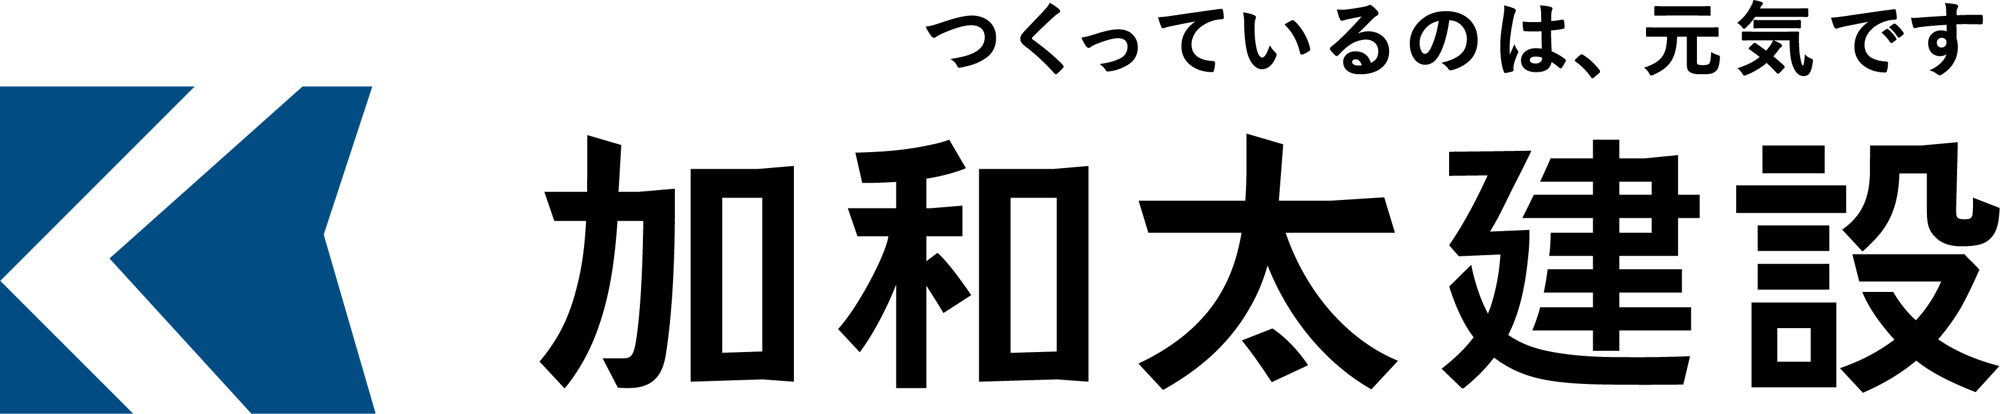 加和太ロゴ(スローガン入り)